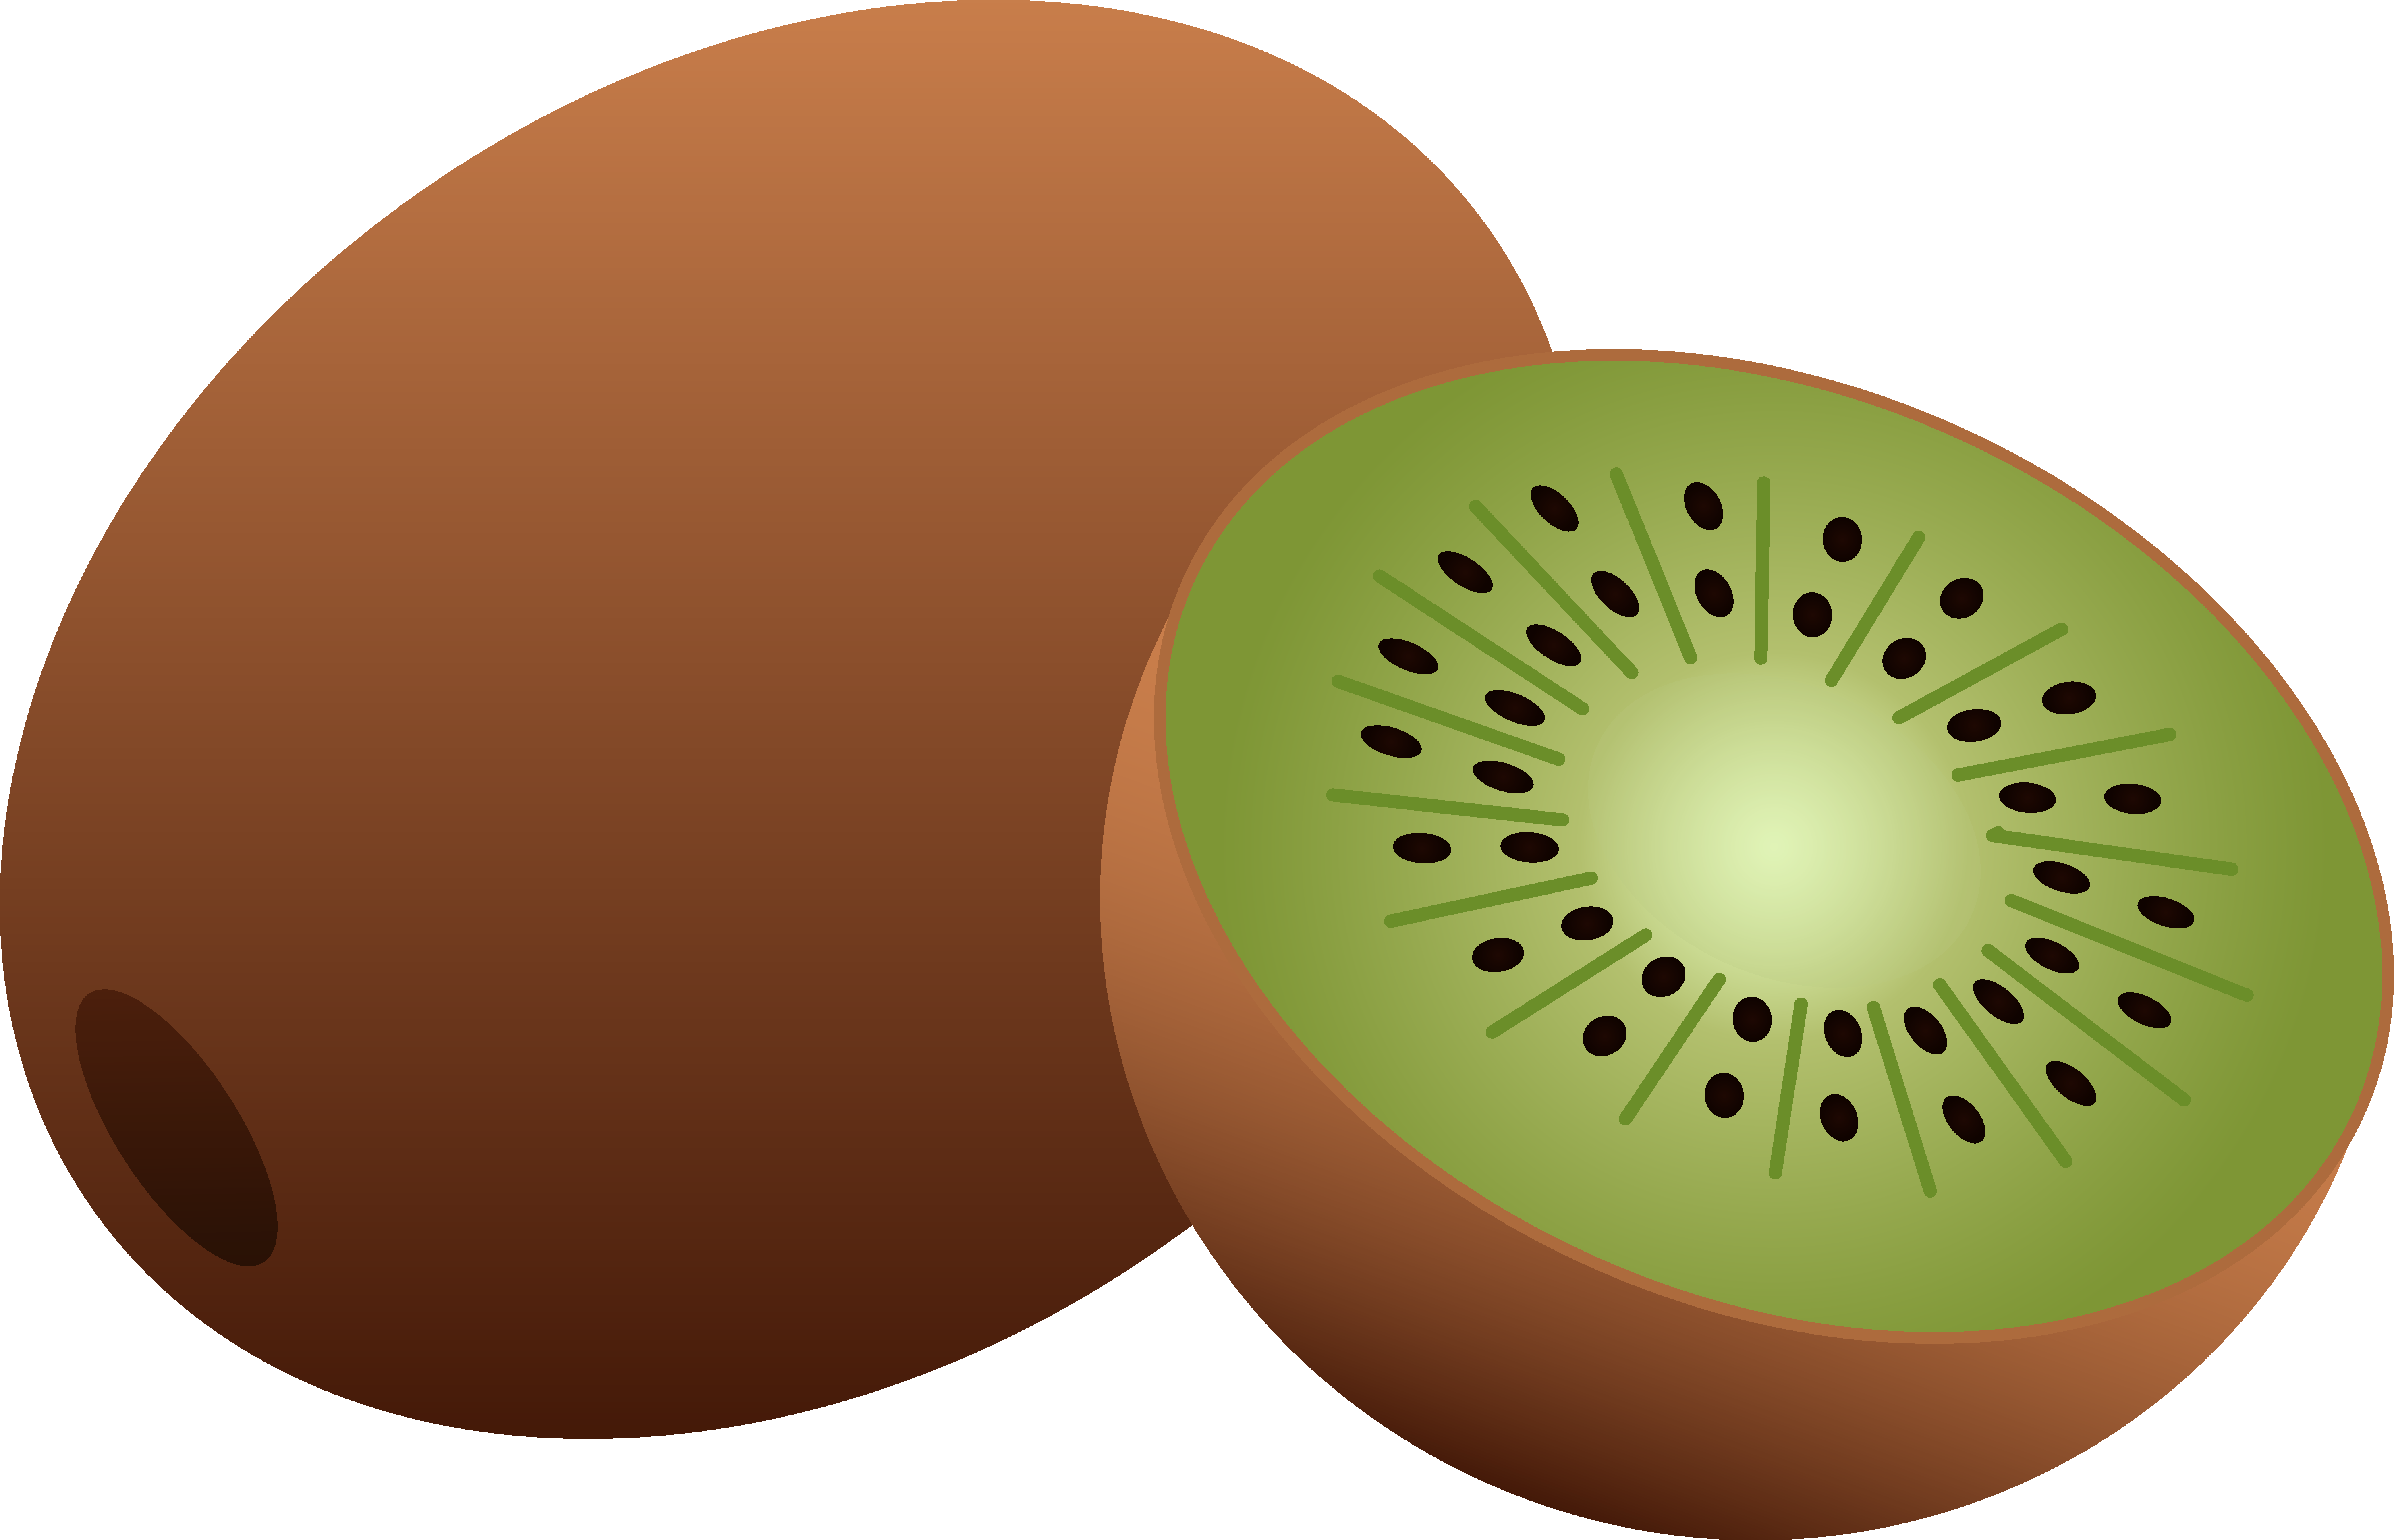 Kiwi Clipart Image Kiwi Fruit